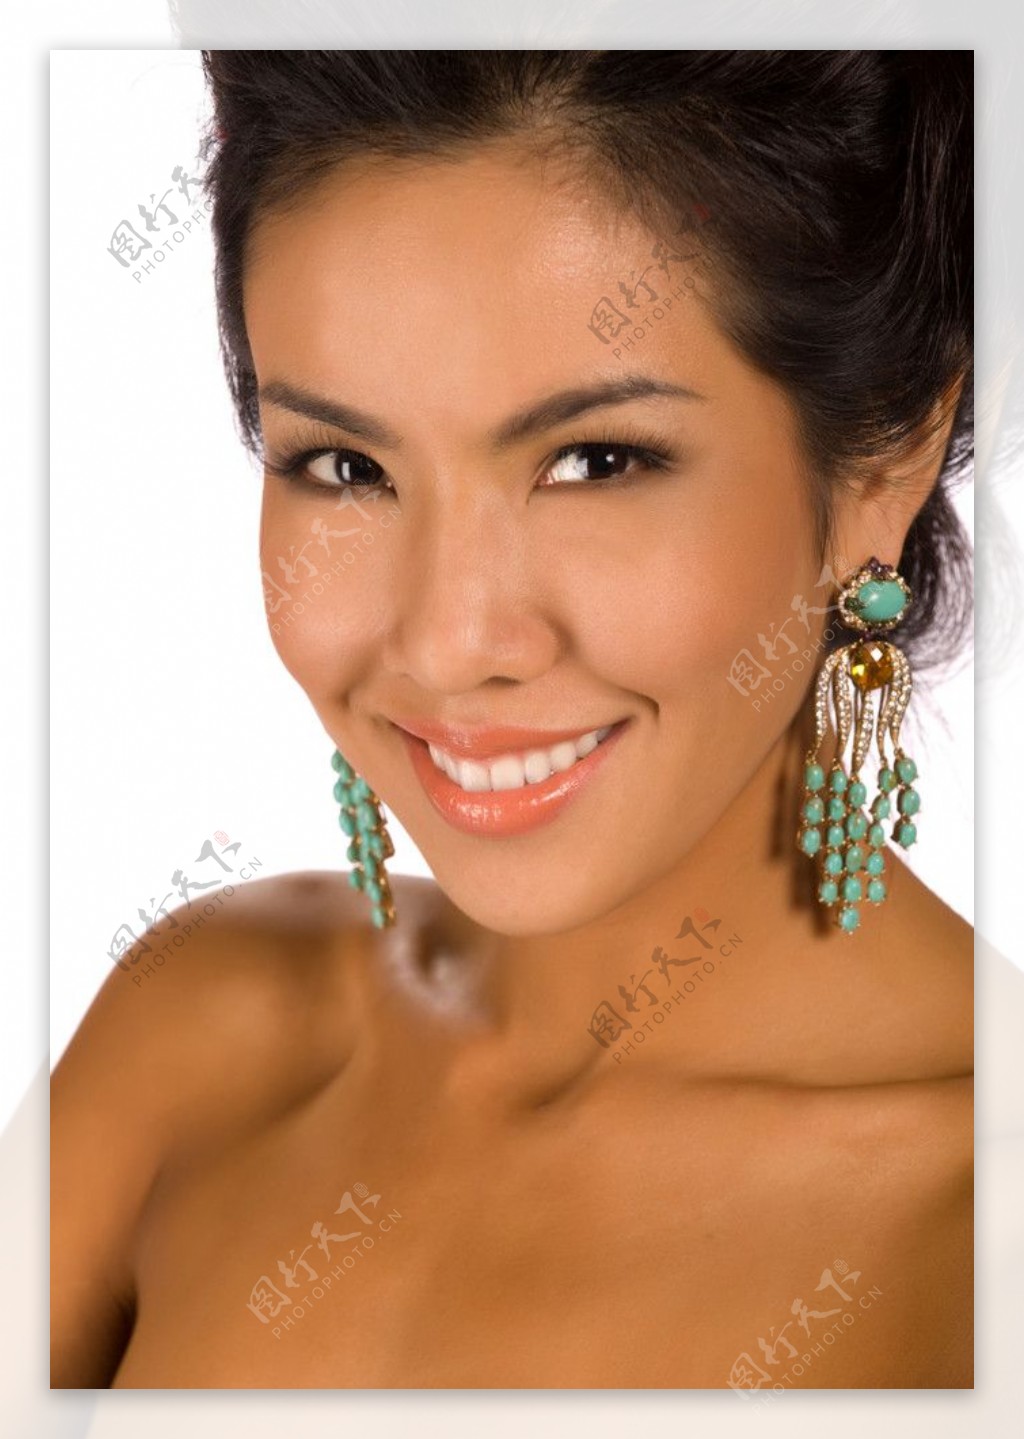 泰国明星美女手机壁纸高清图片-壁纸图片大全